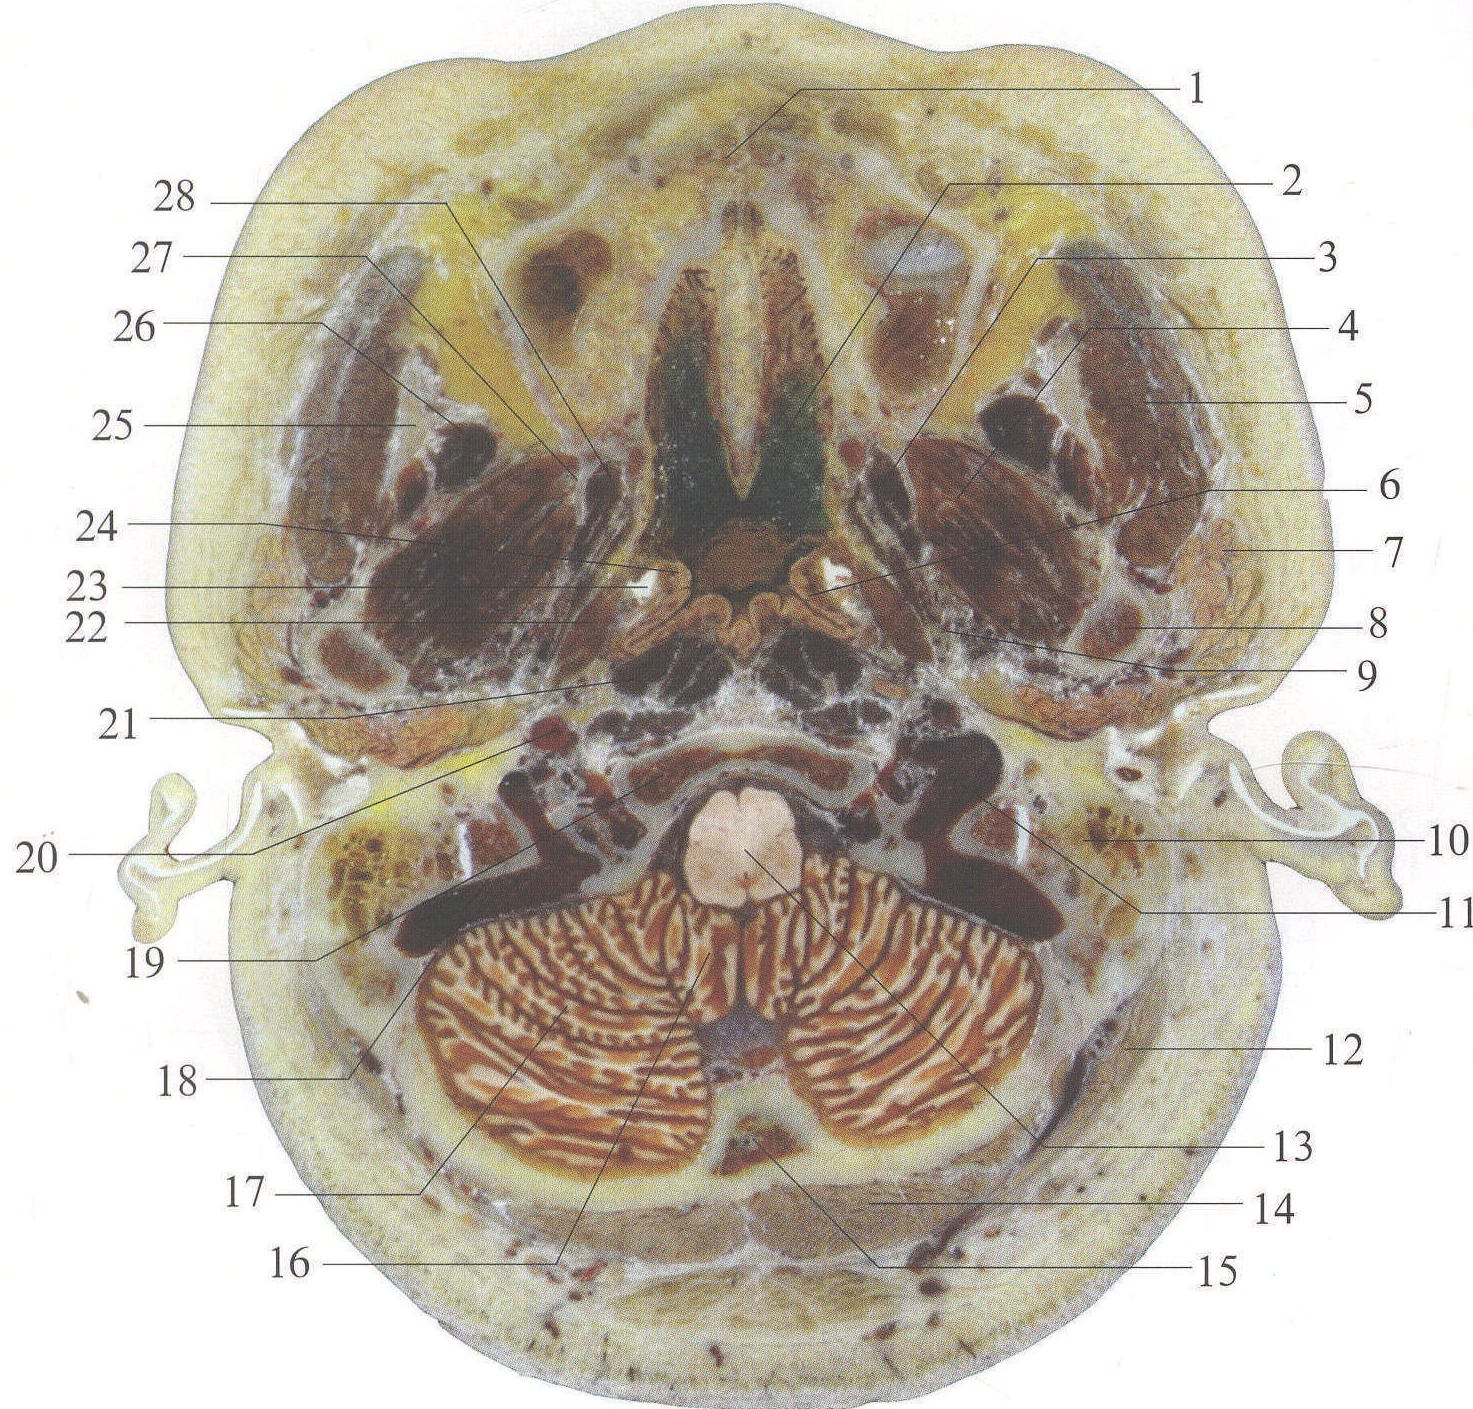 图1-1-25 咽隐窝层面